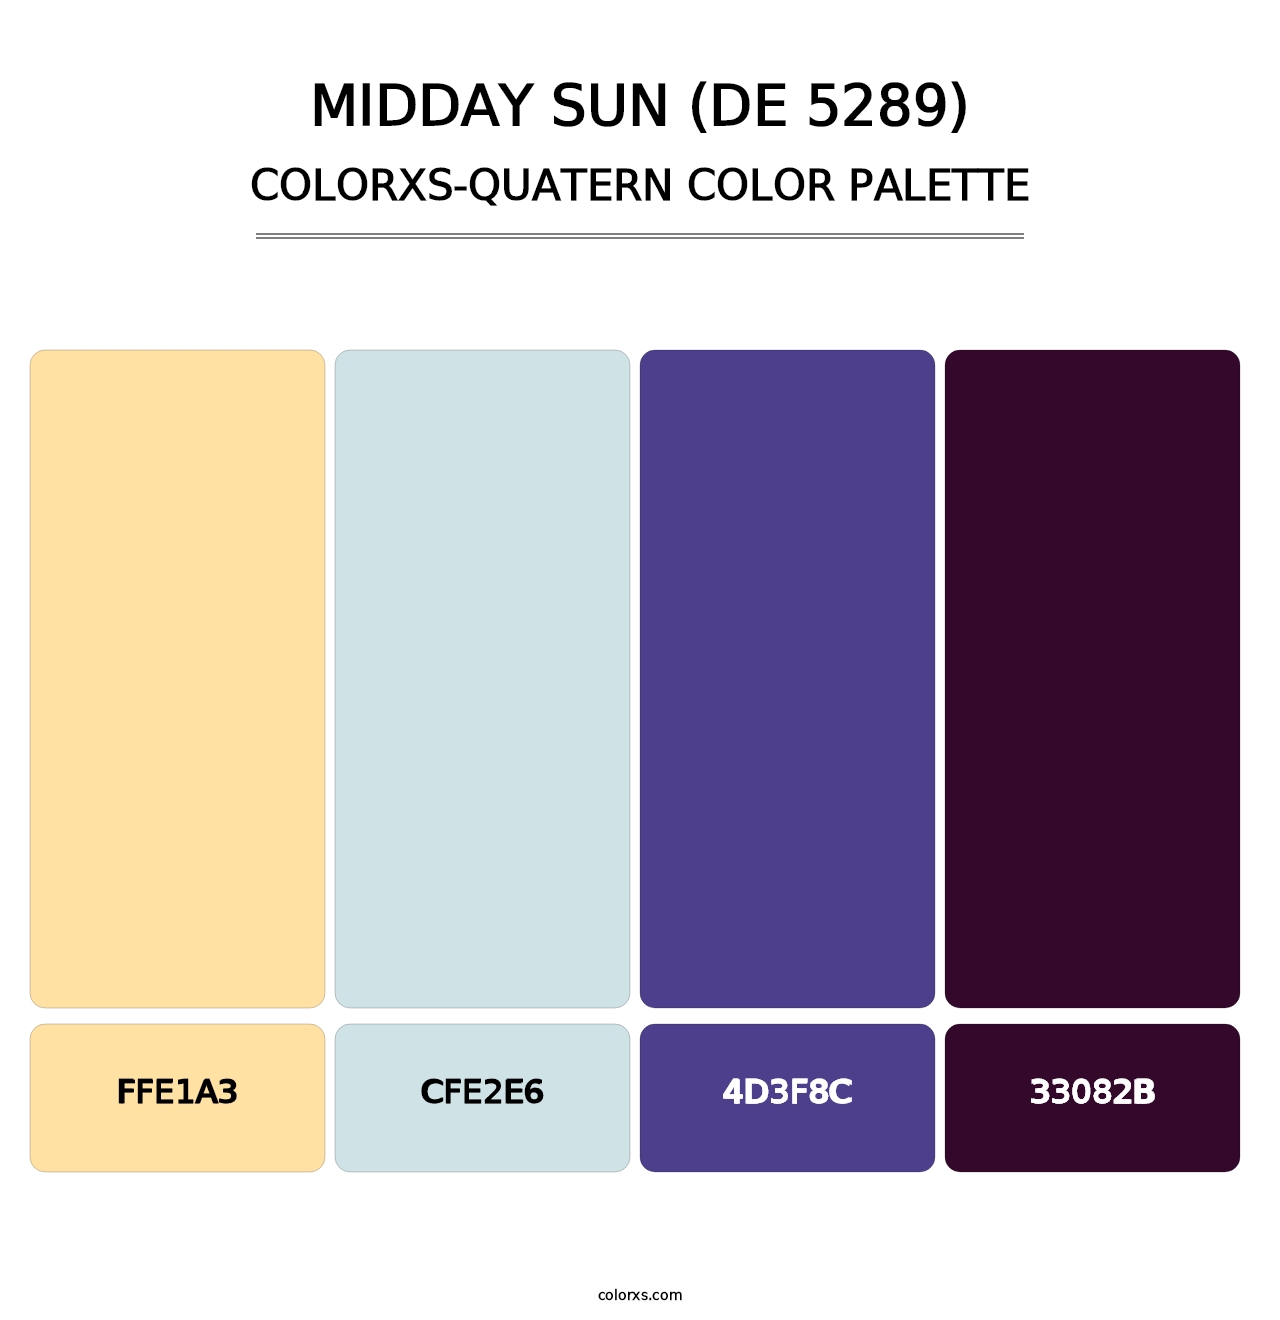 Midday Sun (DE 5289) - Colorxs Quatern Palette